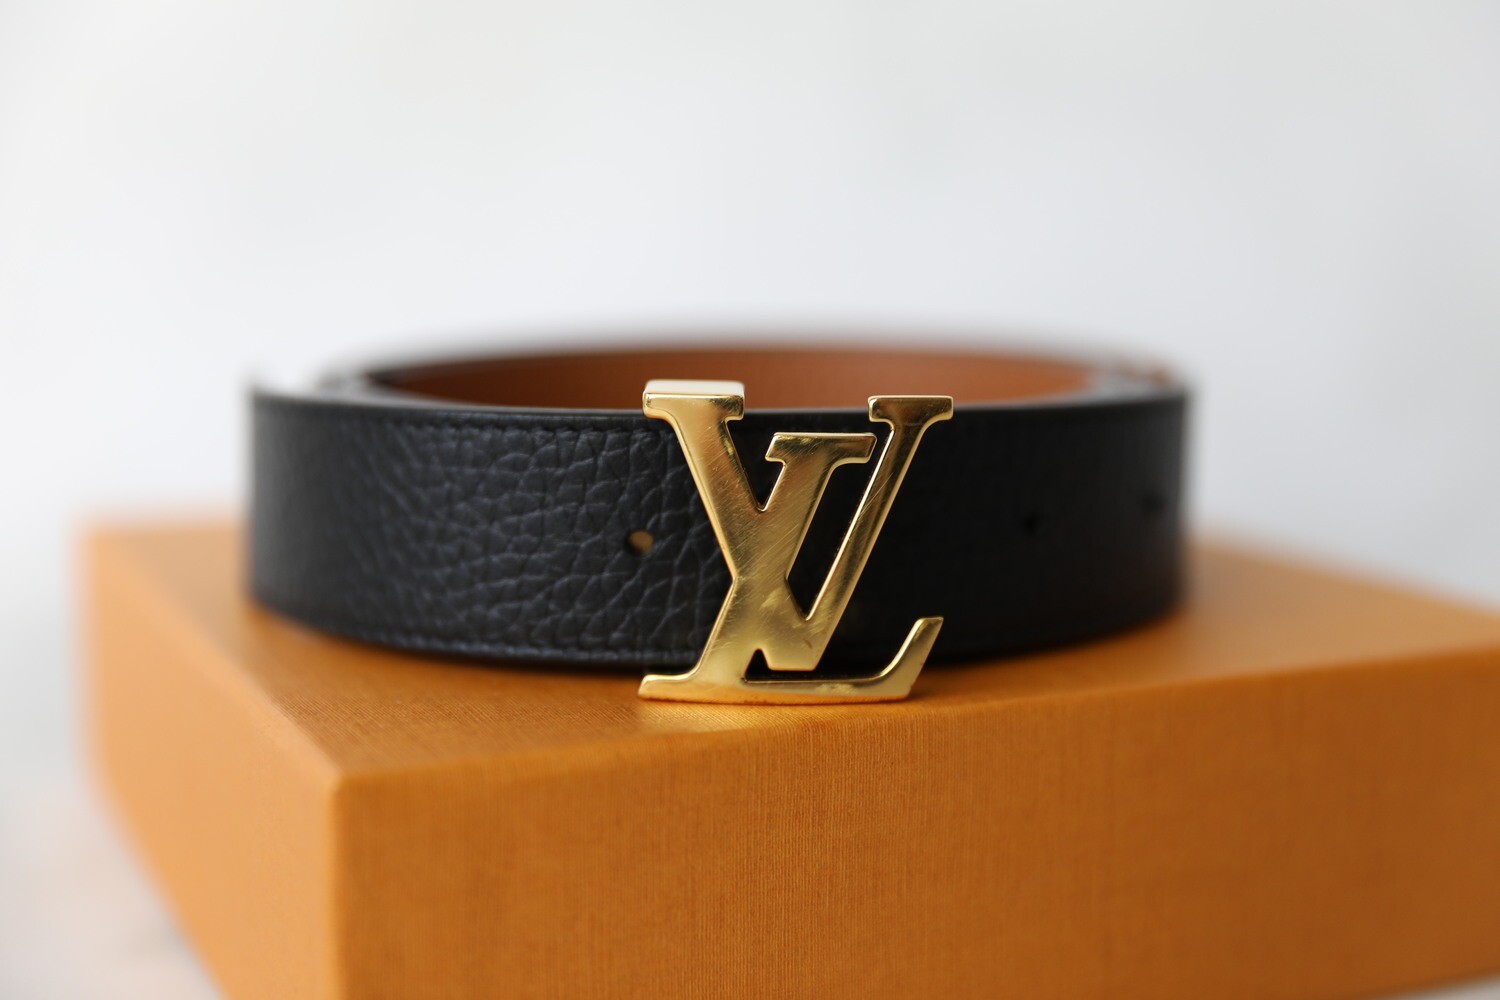 Authentic Louis Vuitton Initiales Reversible Brown Belt 90